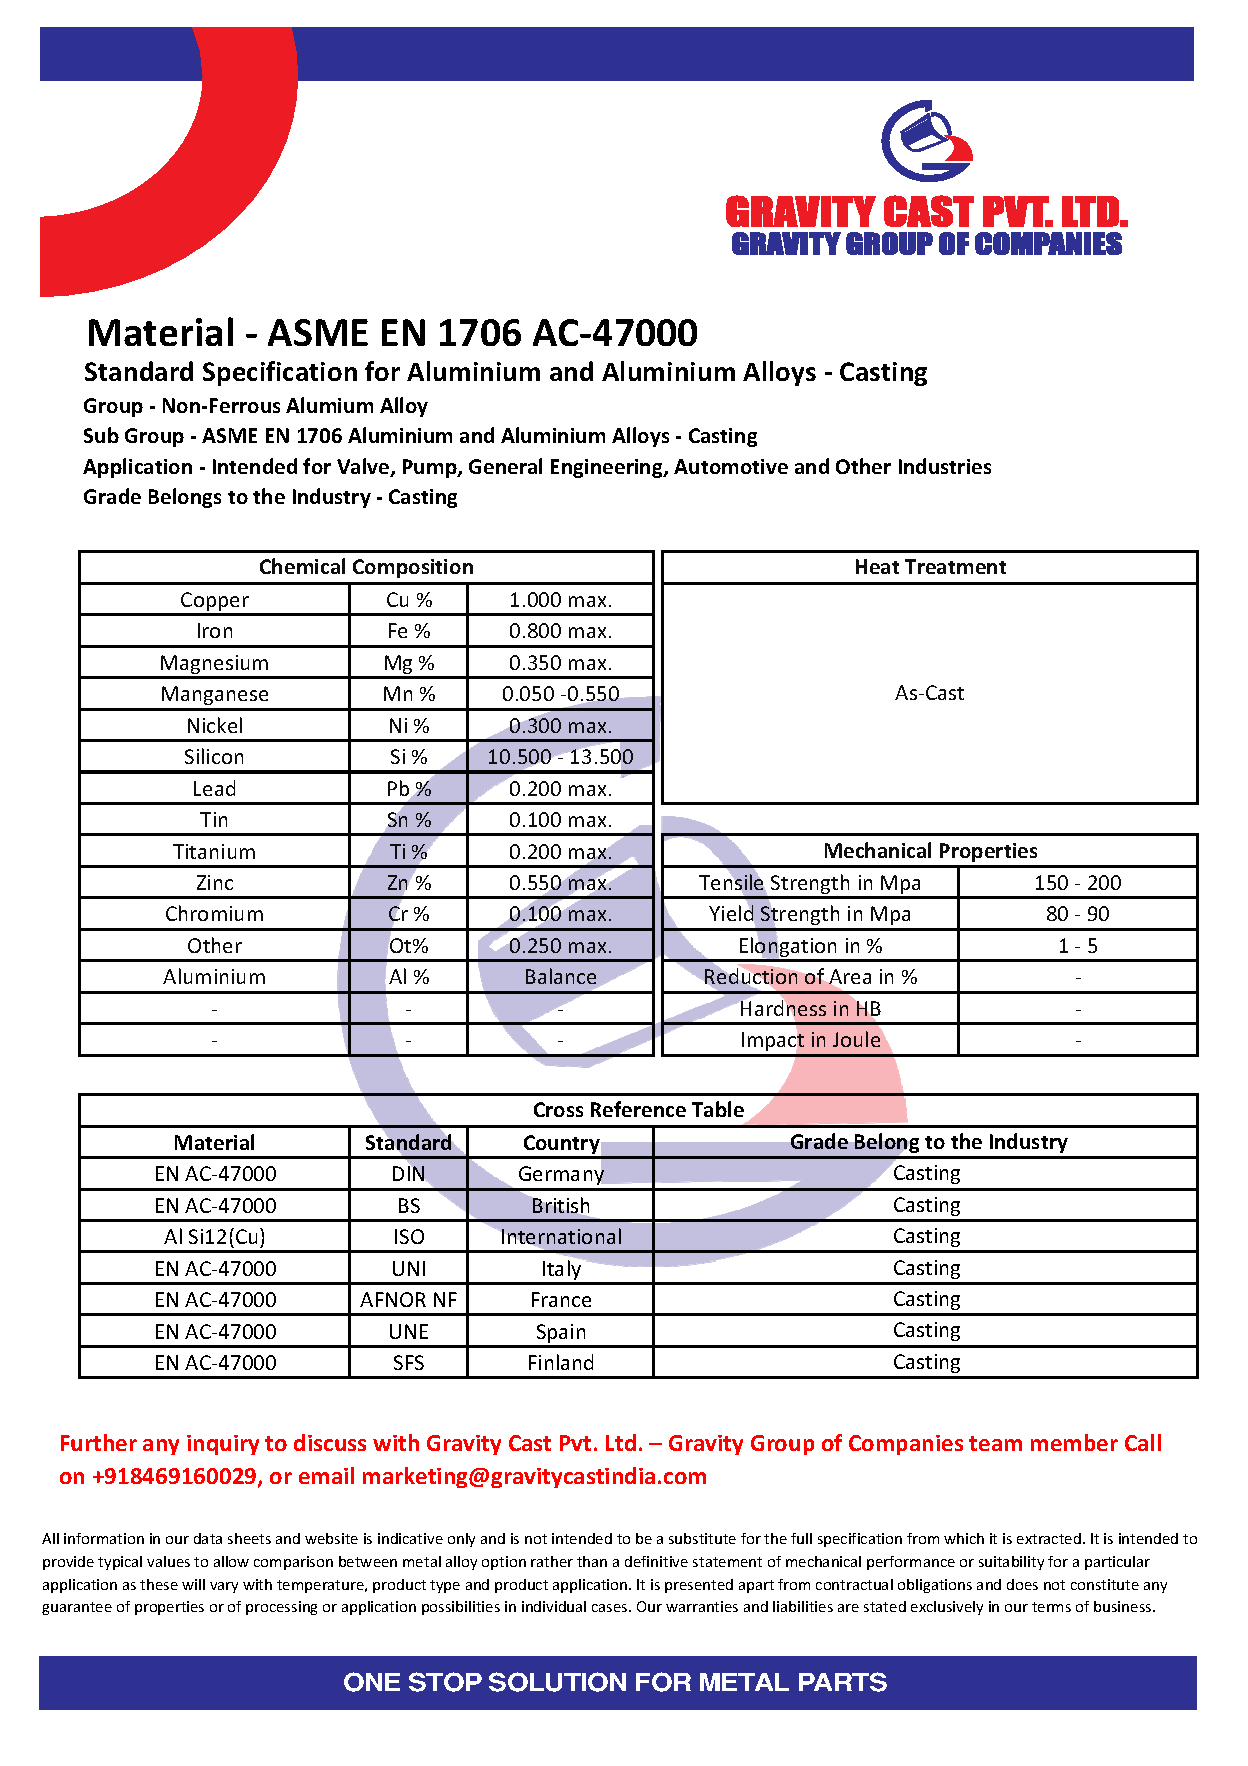 ASME EN 1706 AC-47000.pdf